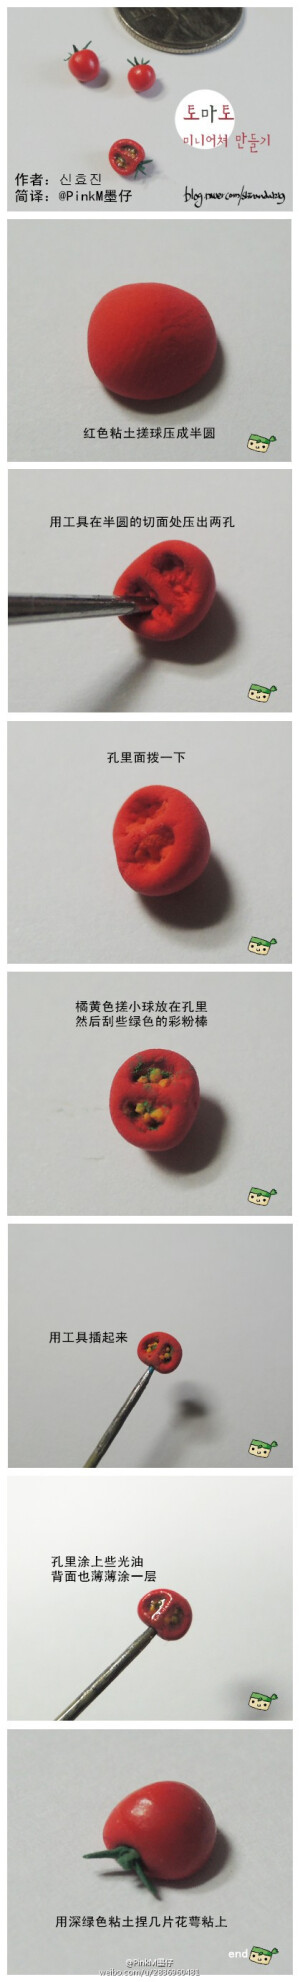 【超轻粘土教程】西红柿 by:@PinkM墨仔